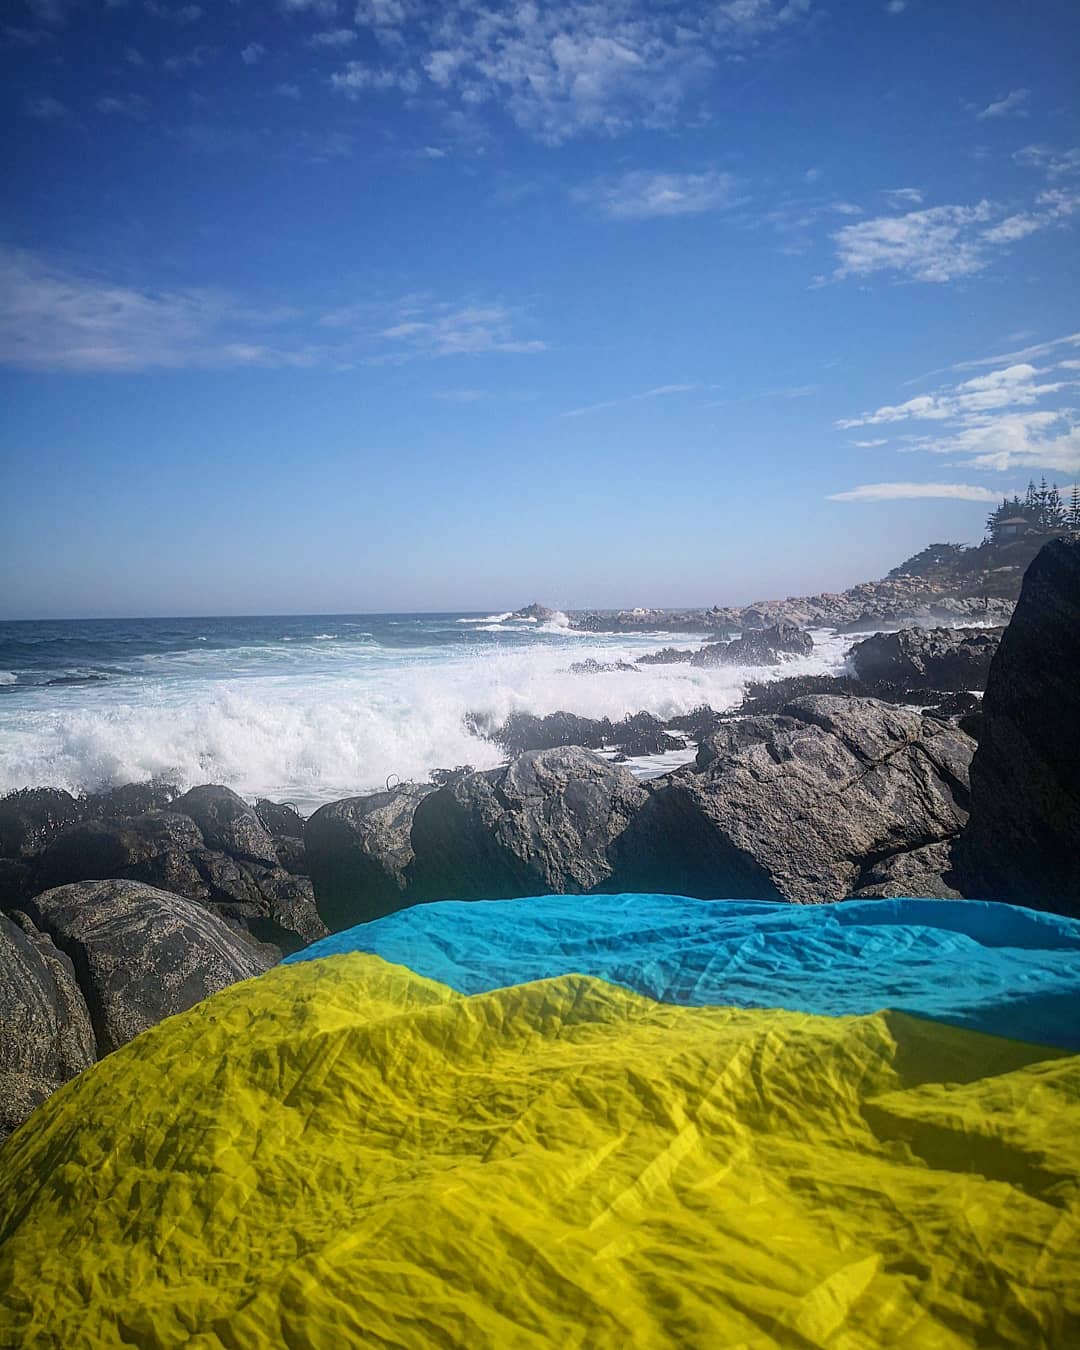 Вообще что можно понять, листая фотографии украинцев в Instagram - наш флаг идеально подходит к любому уголку страны. @irih_90 показала, что пенящееся море и сине-желтые цвета тоже неплохо сочетаются